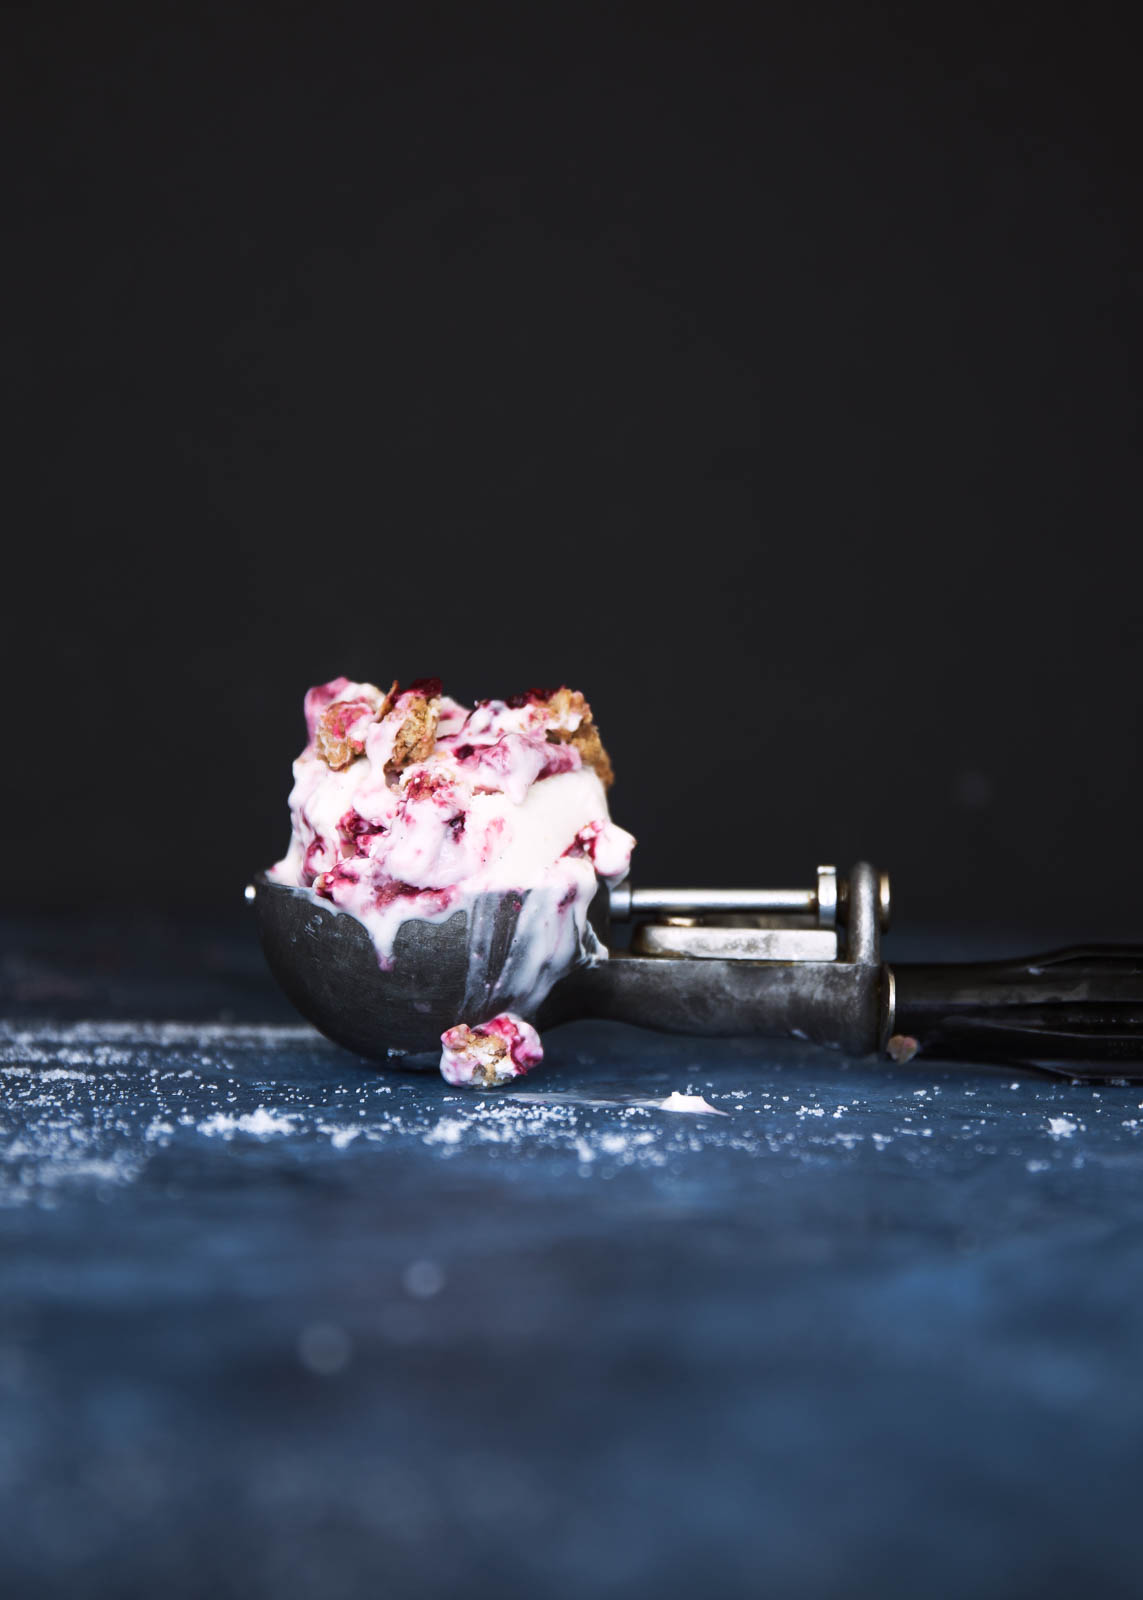 Gluten free Blackberry Crisp Frozen Yogurt that perfectly combines warm flavors in a tangy frozen yogurt